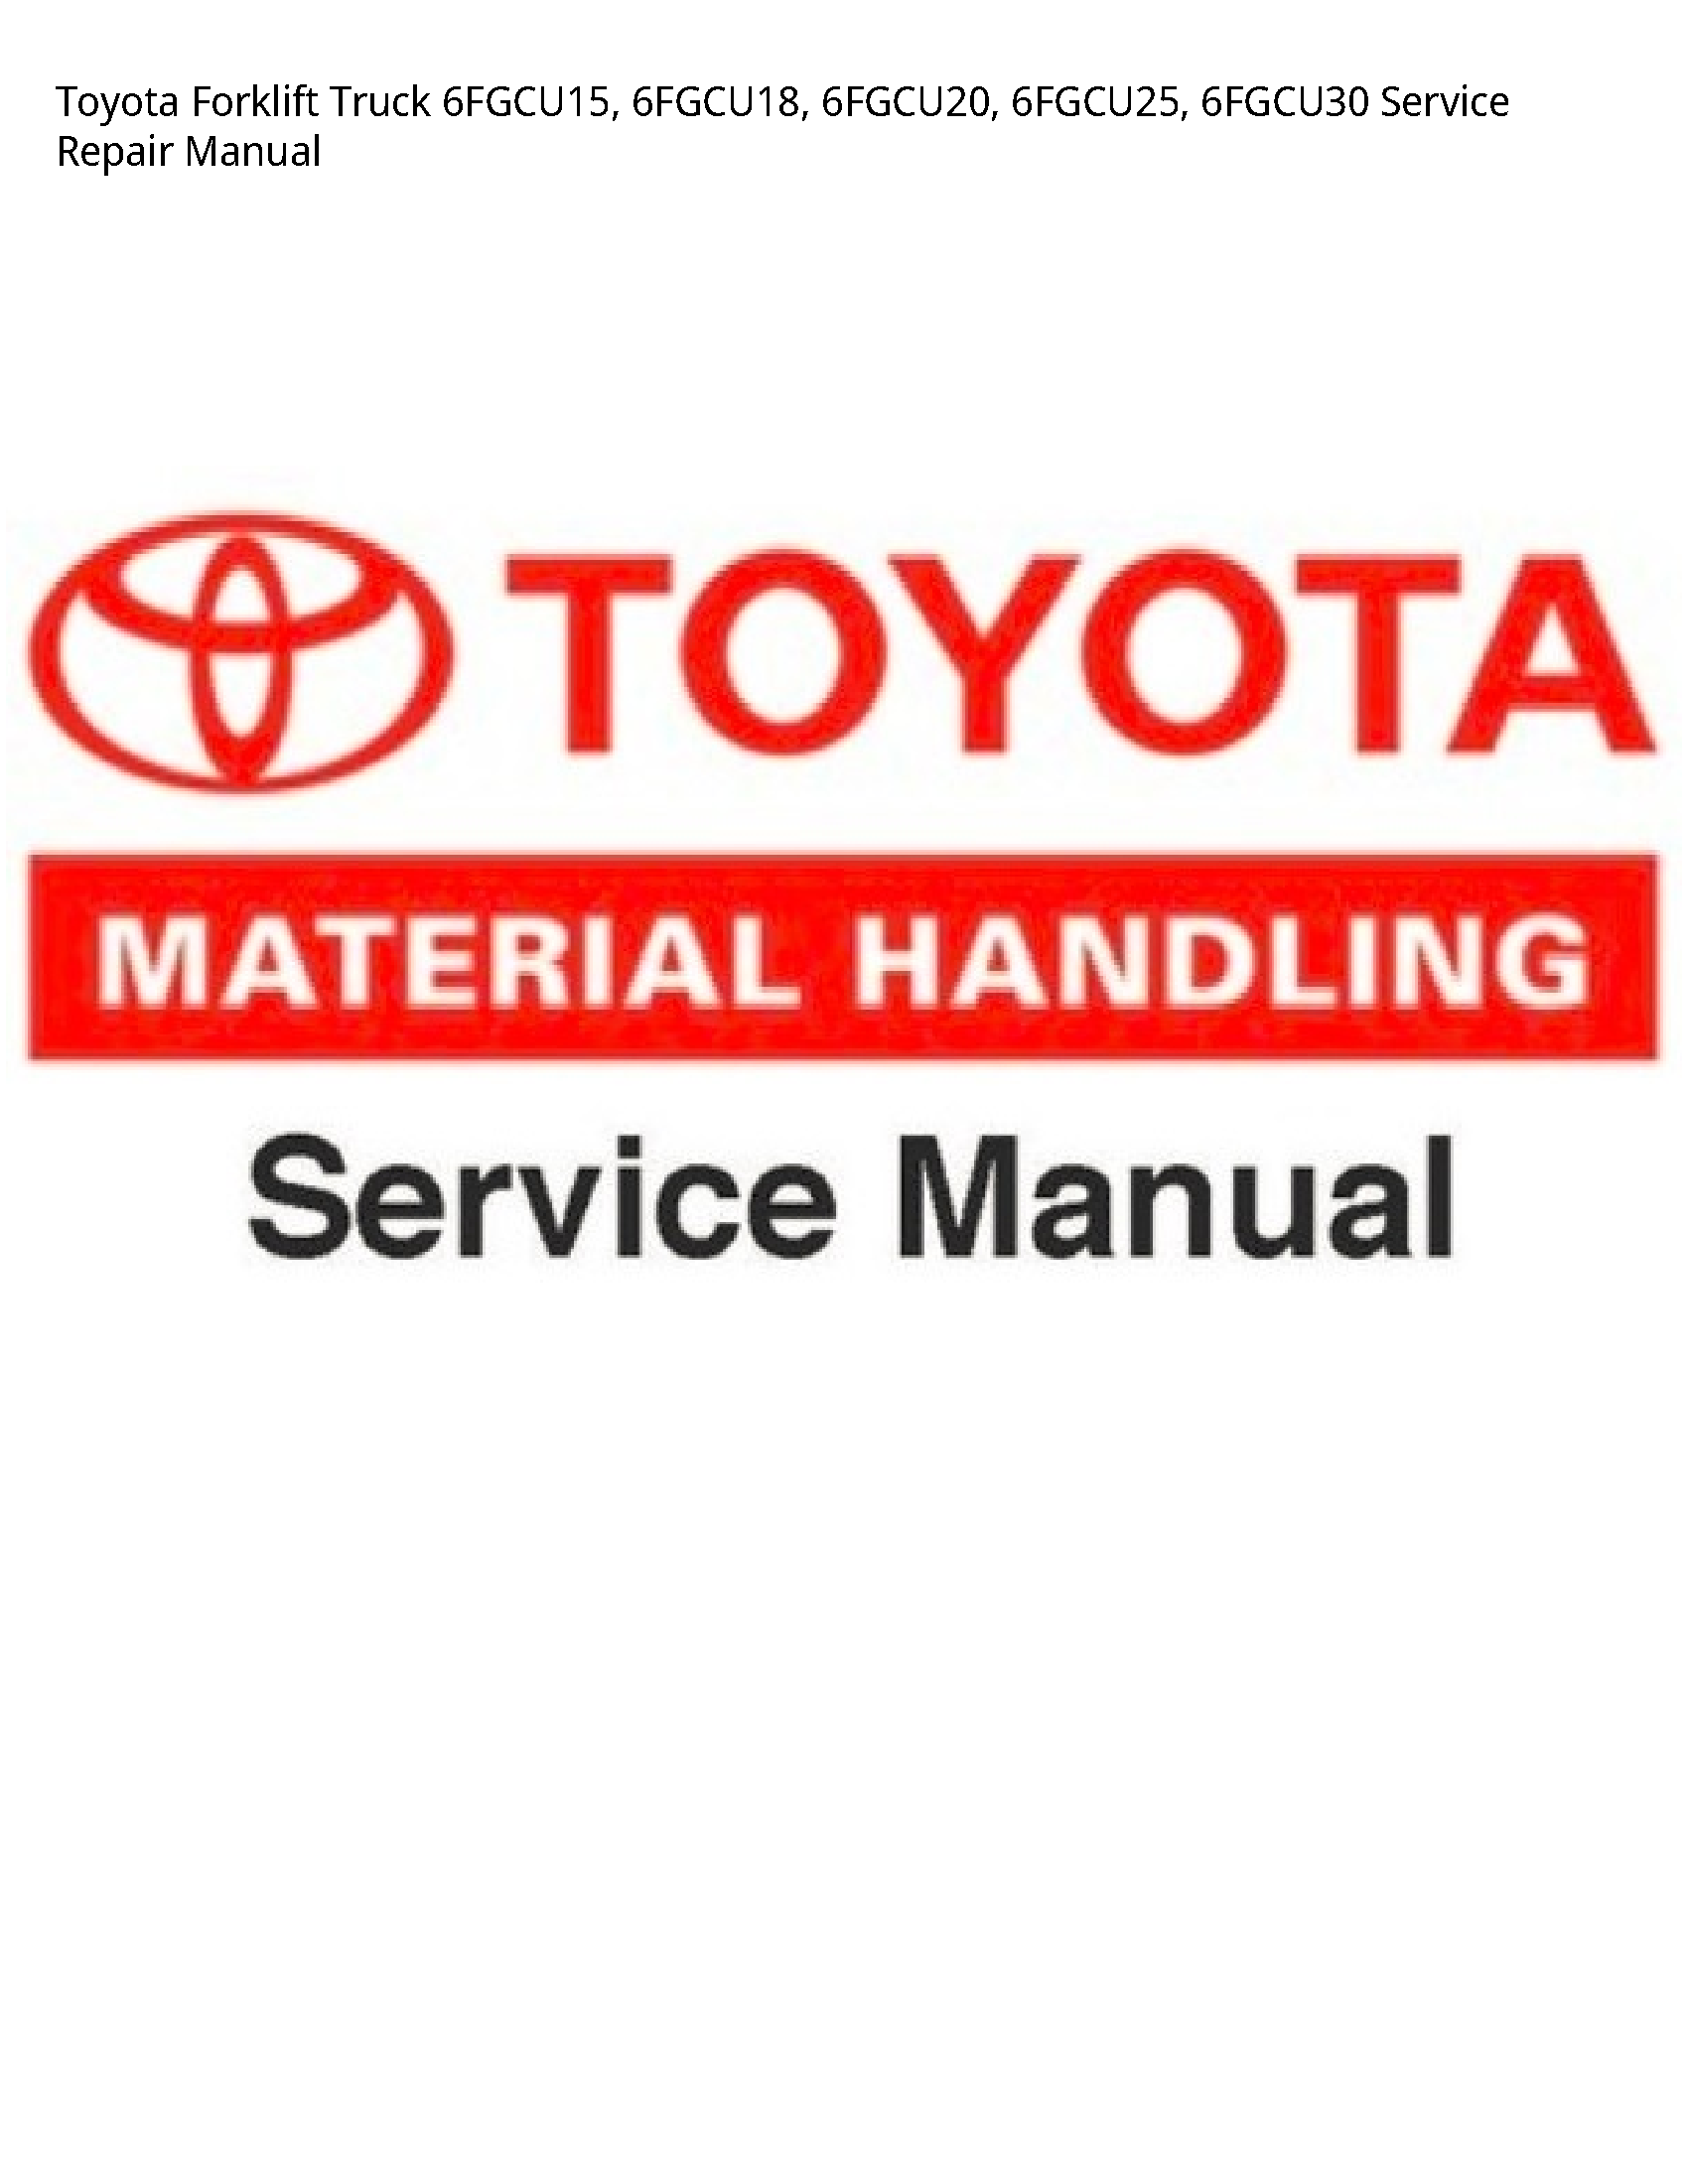 Toyota 6FGCU15 Forklift Truck manual